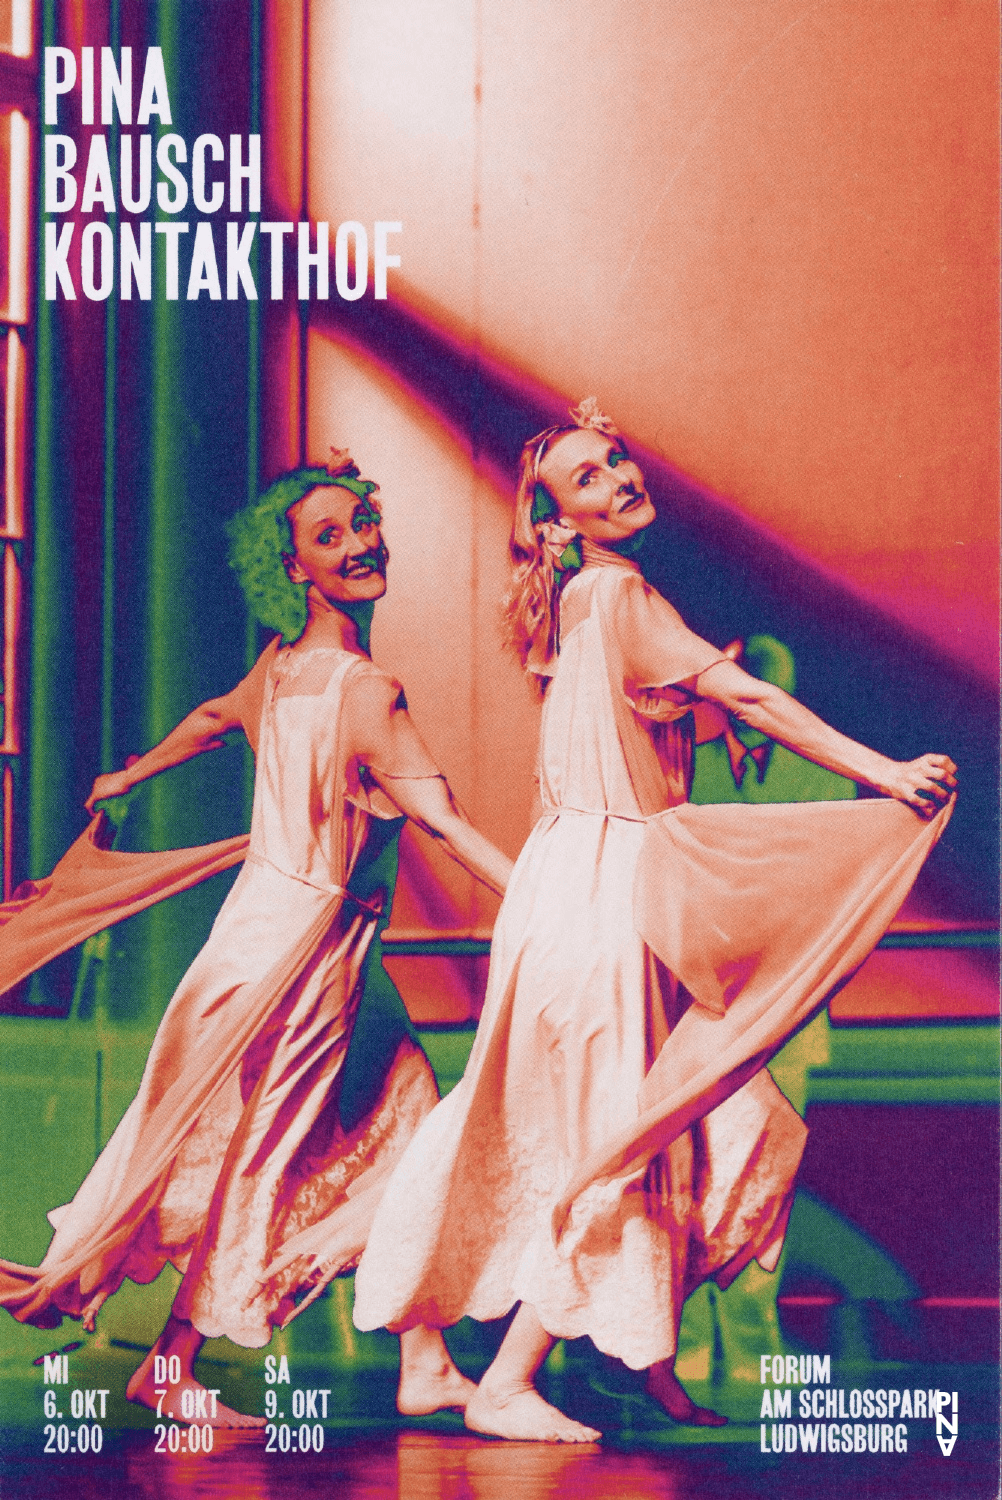 Programme pour « Kontakthof » de Pina Bausch avec Tanztheater Wuppertal à Ludwigsburg, 6 oct. 2021 – 9 oct. 2021